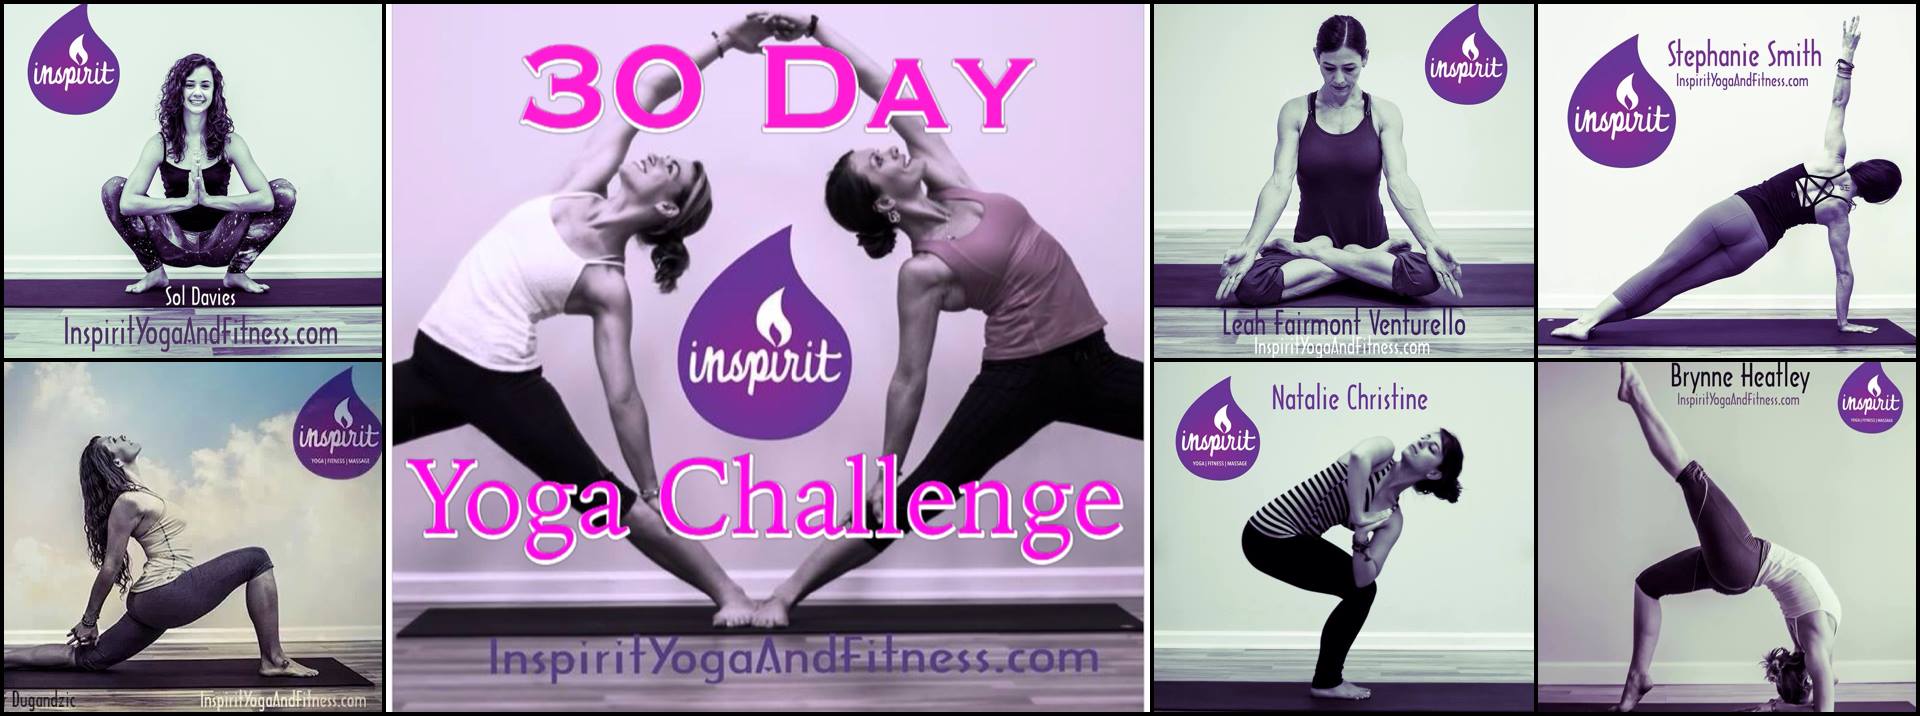 30 day challenge banner